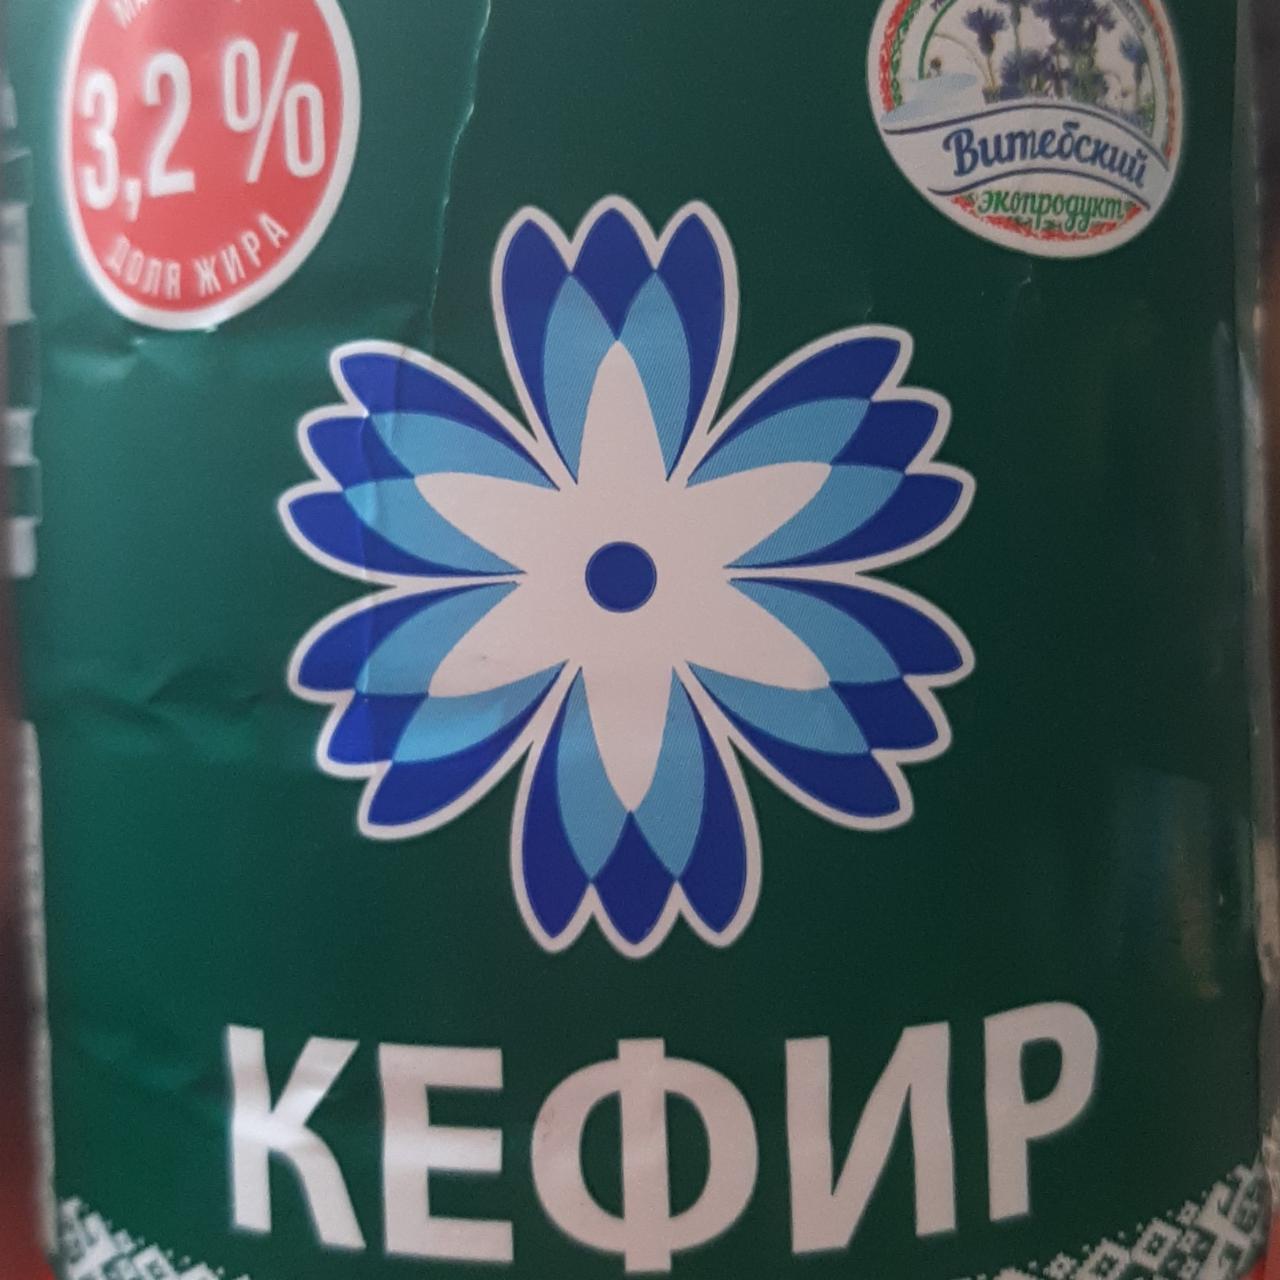 Фото - Кефир 3.2% Витебский экопродукт